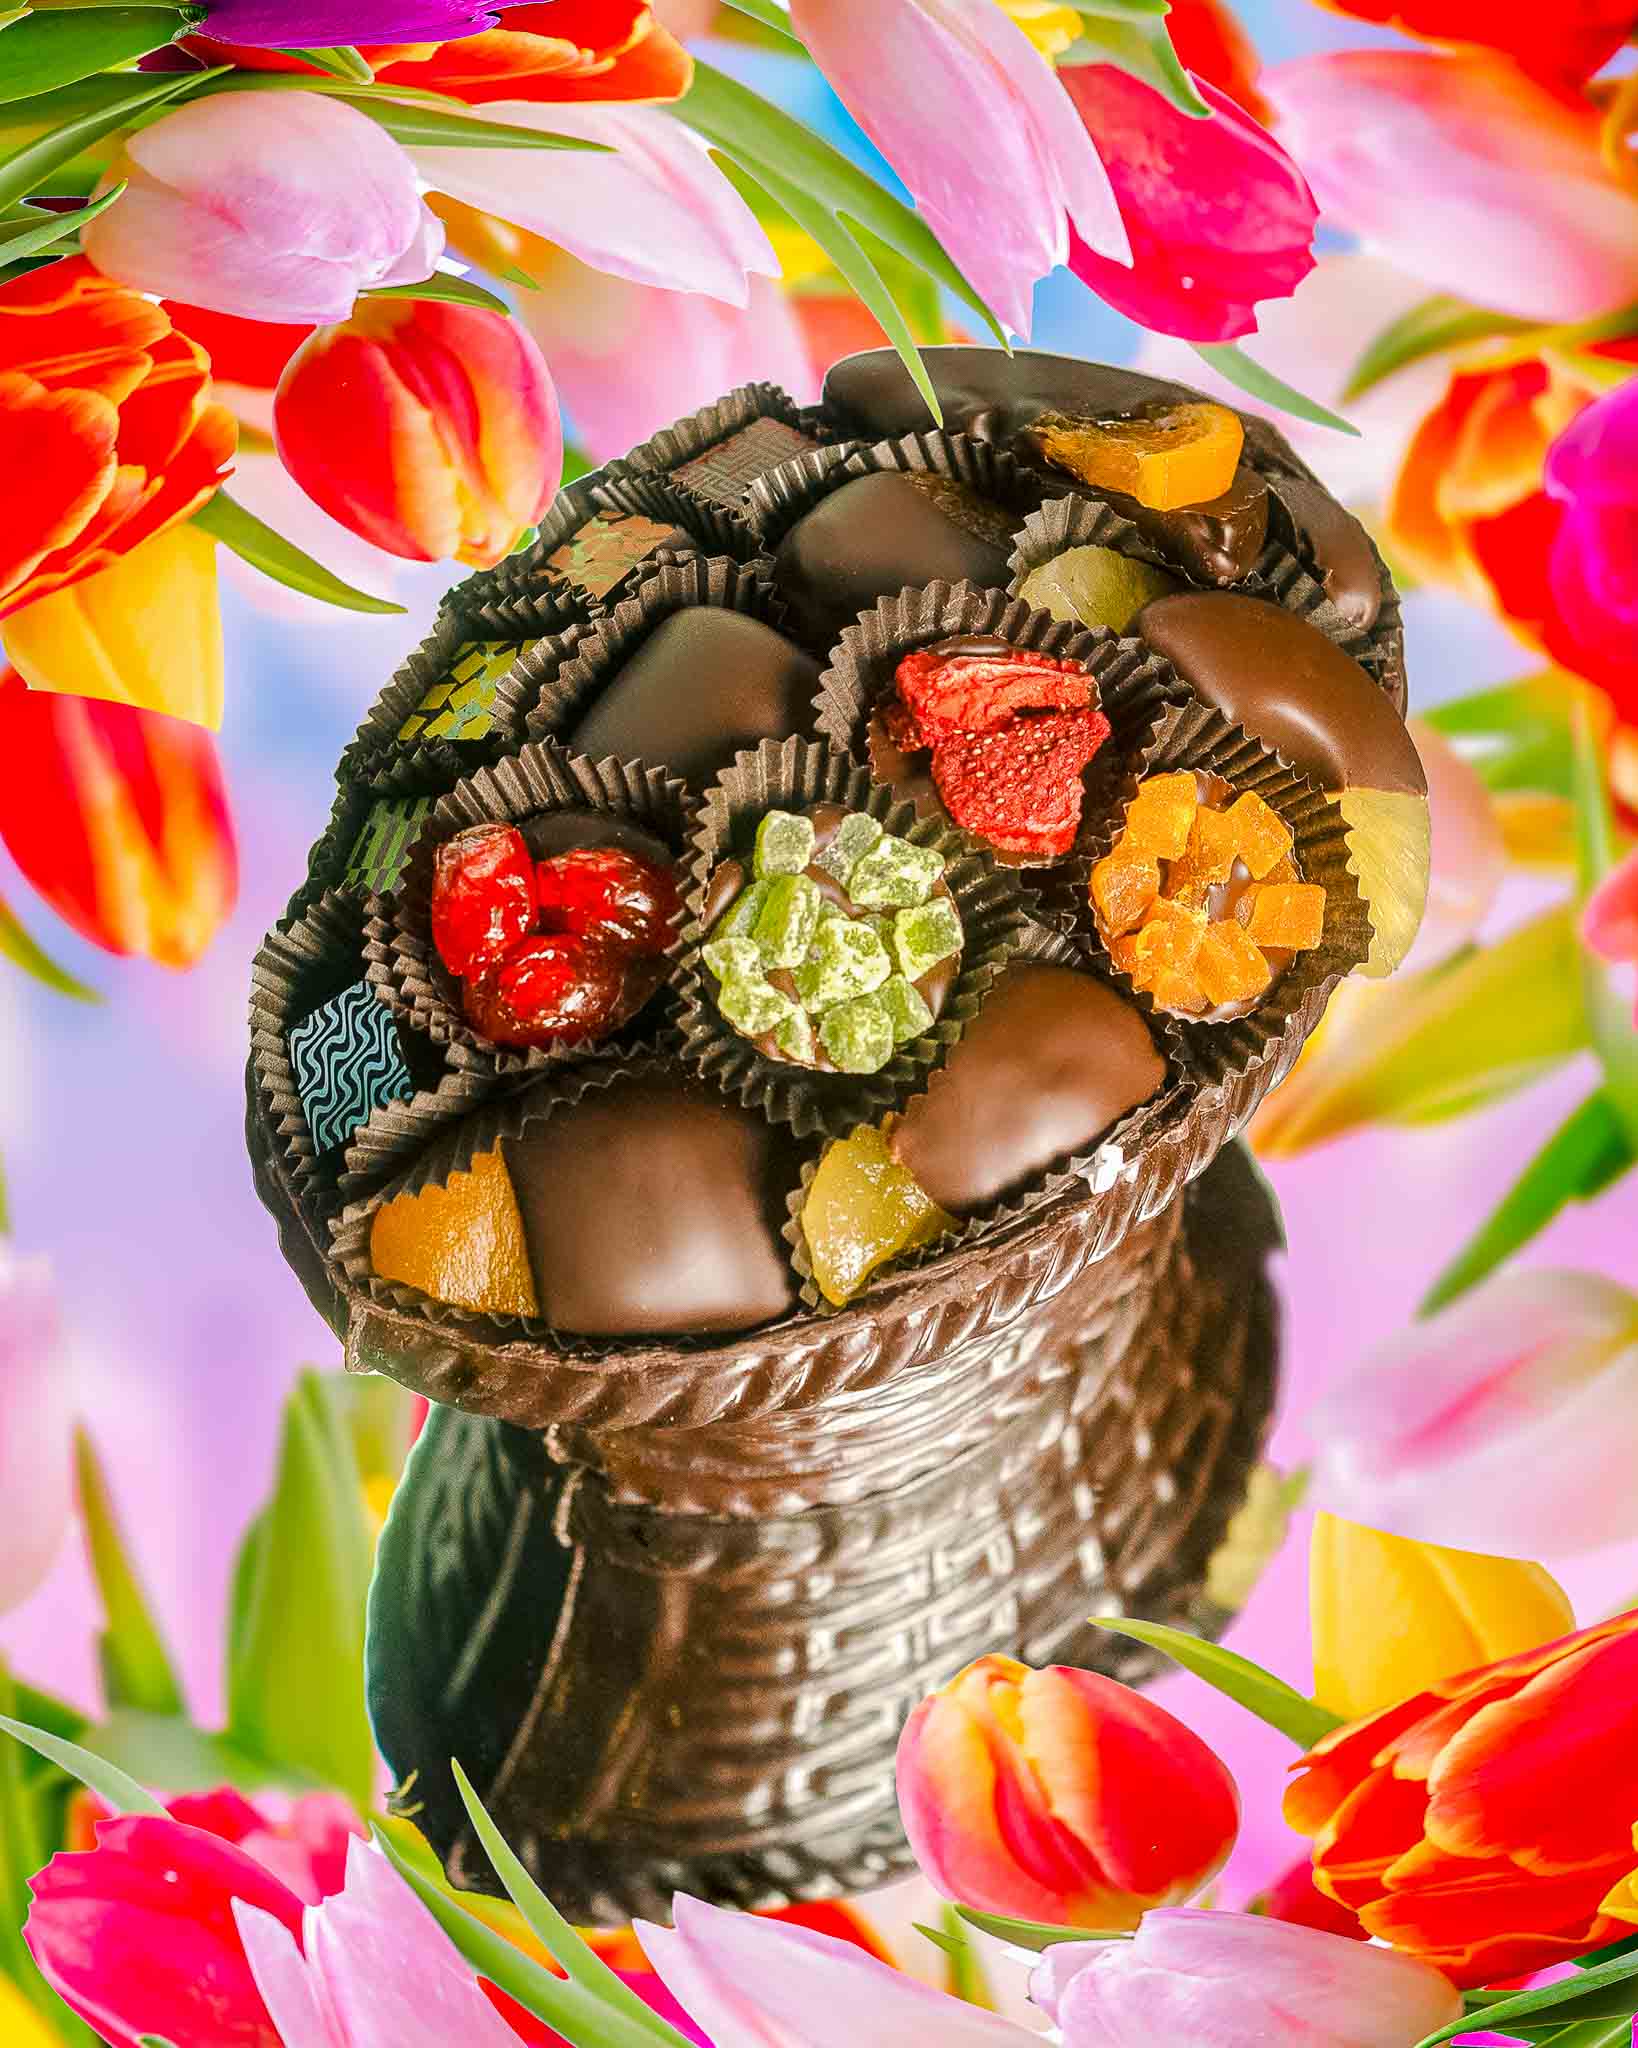 Edible Chocolate Gift Basket - Luxury Dark Chocolate Oval